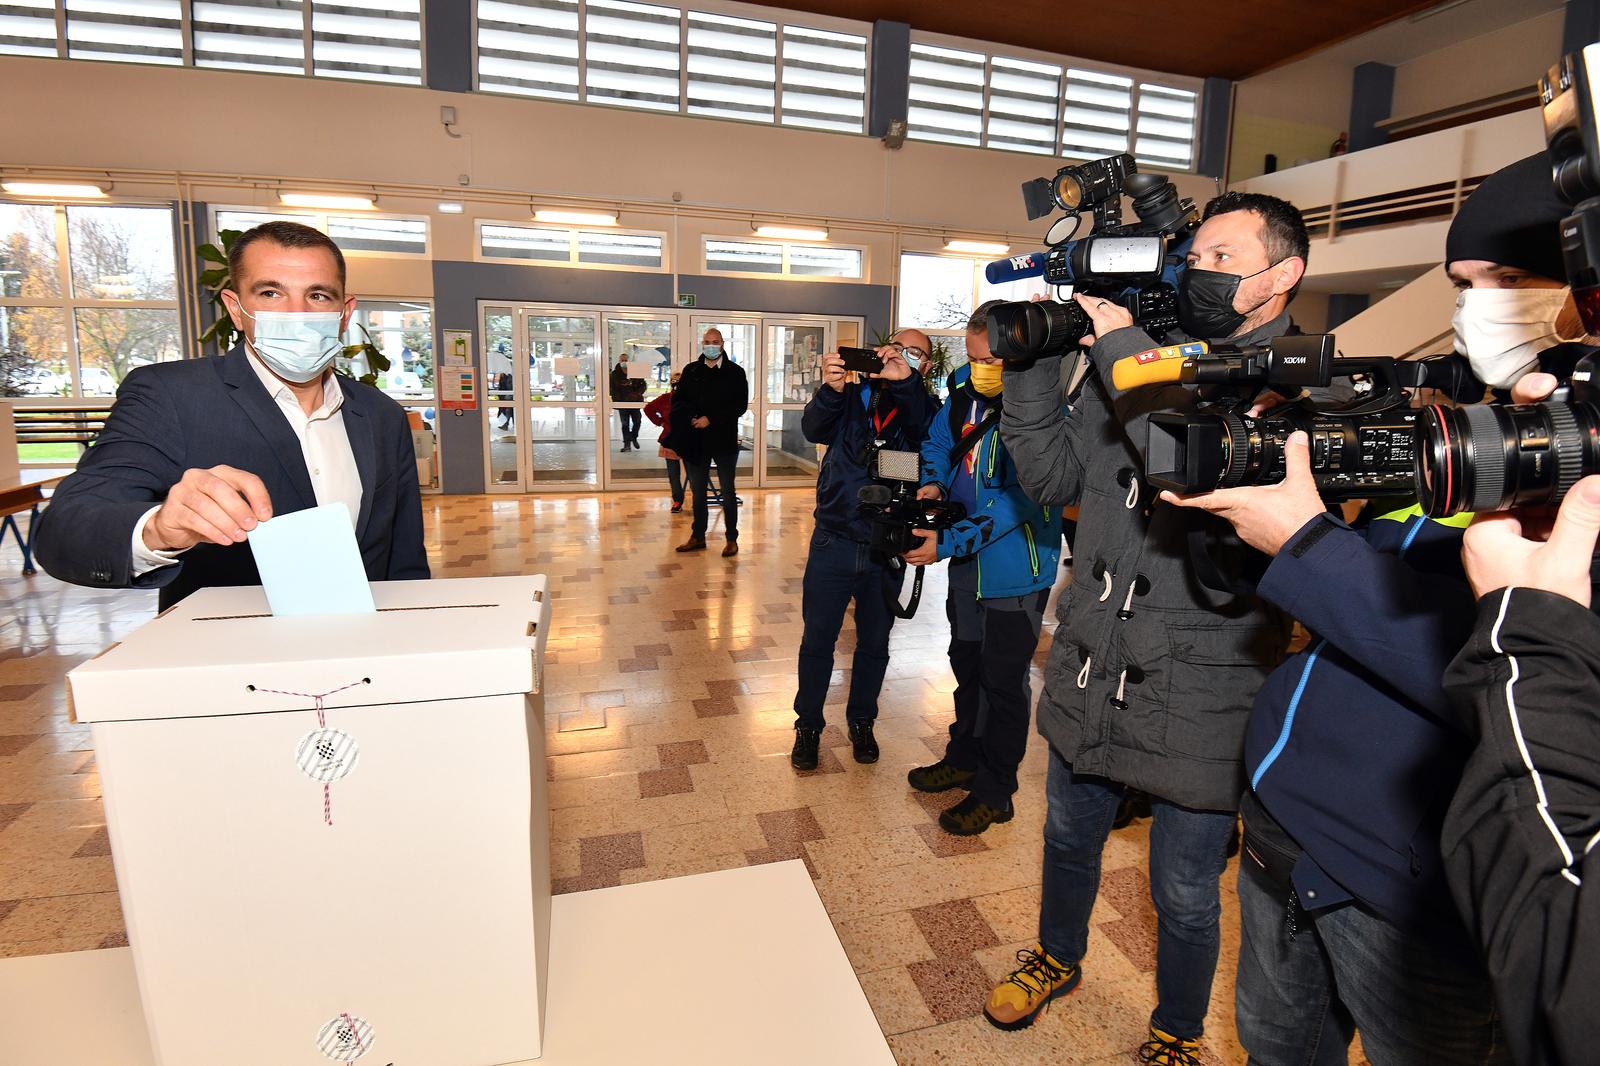 28.11.2021., Cakovec - Matija Posavec glasao je na prijevremenim izborima za medjimurskog zupana.
Photo: Vjeran Zganec Rogulja/PIXSELL